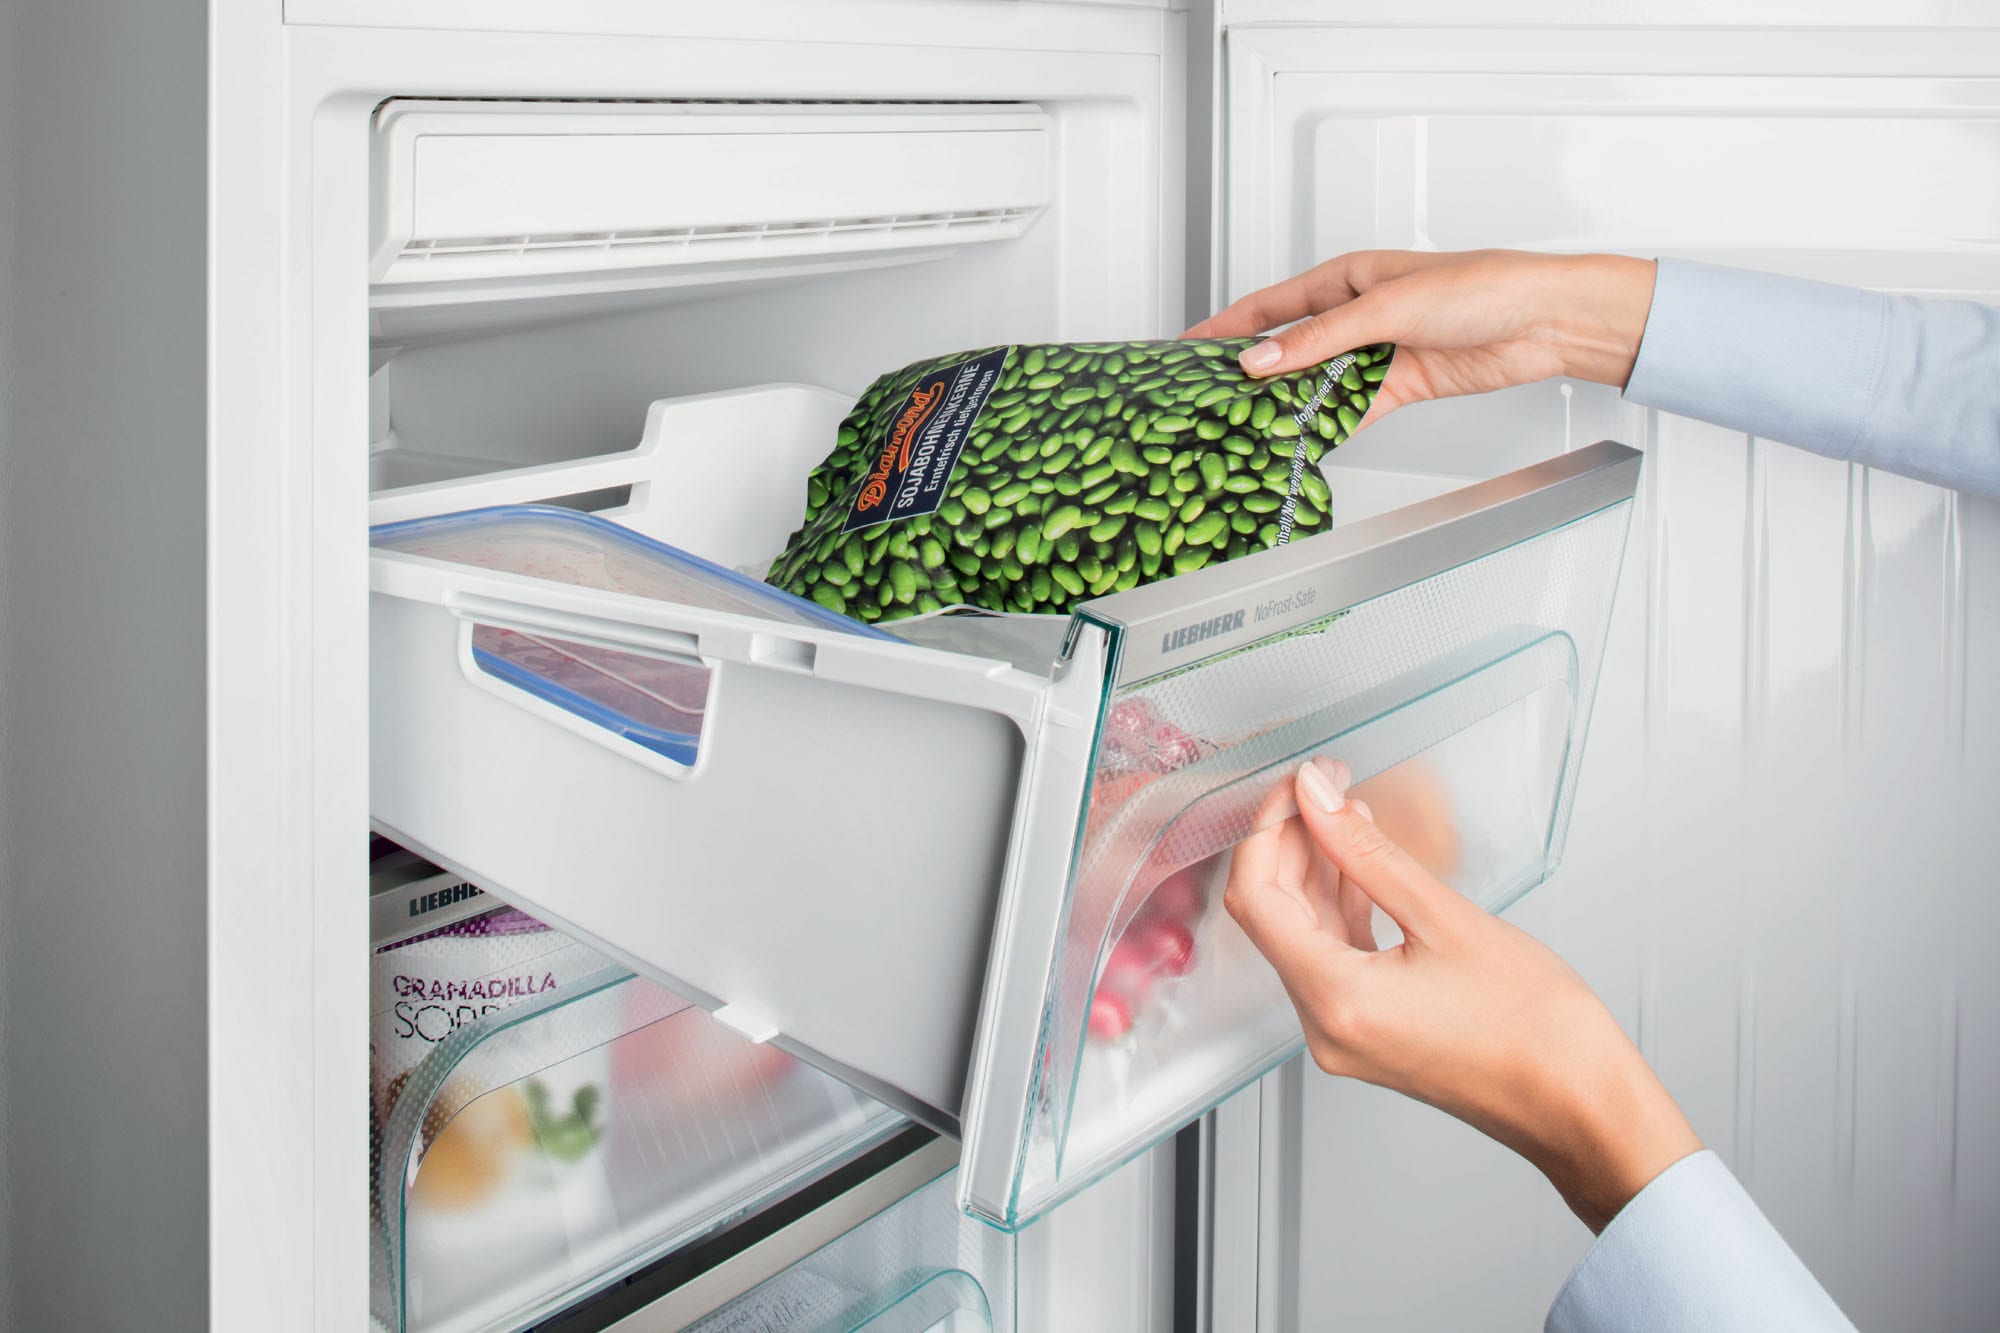 Come disattivare la funzione di sbrinamento del frigorifero?